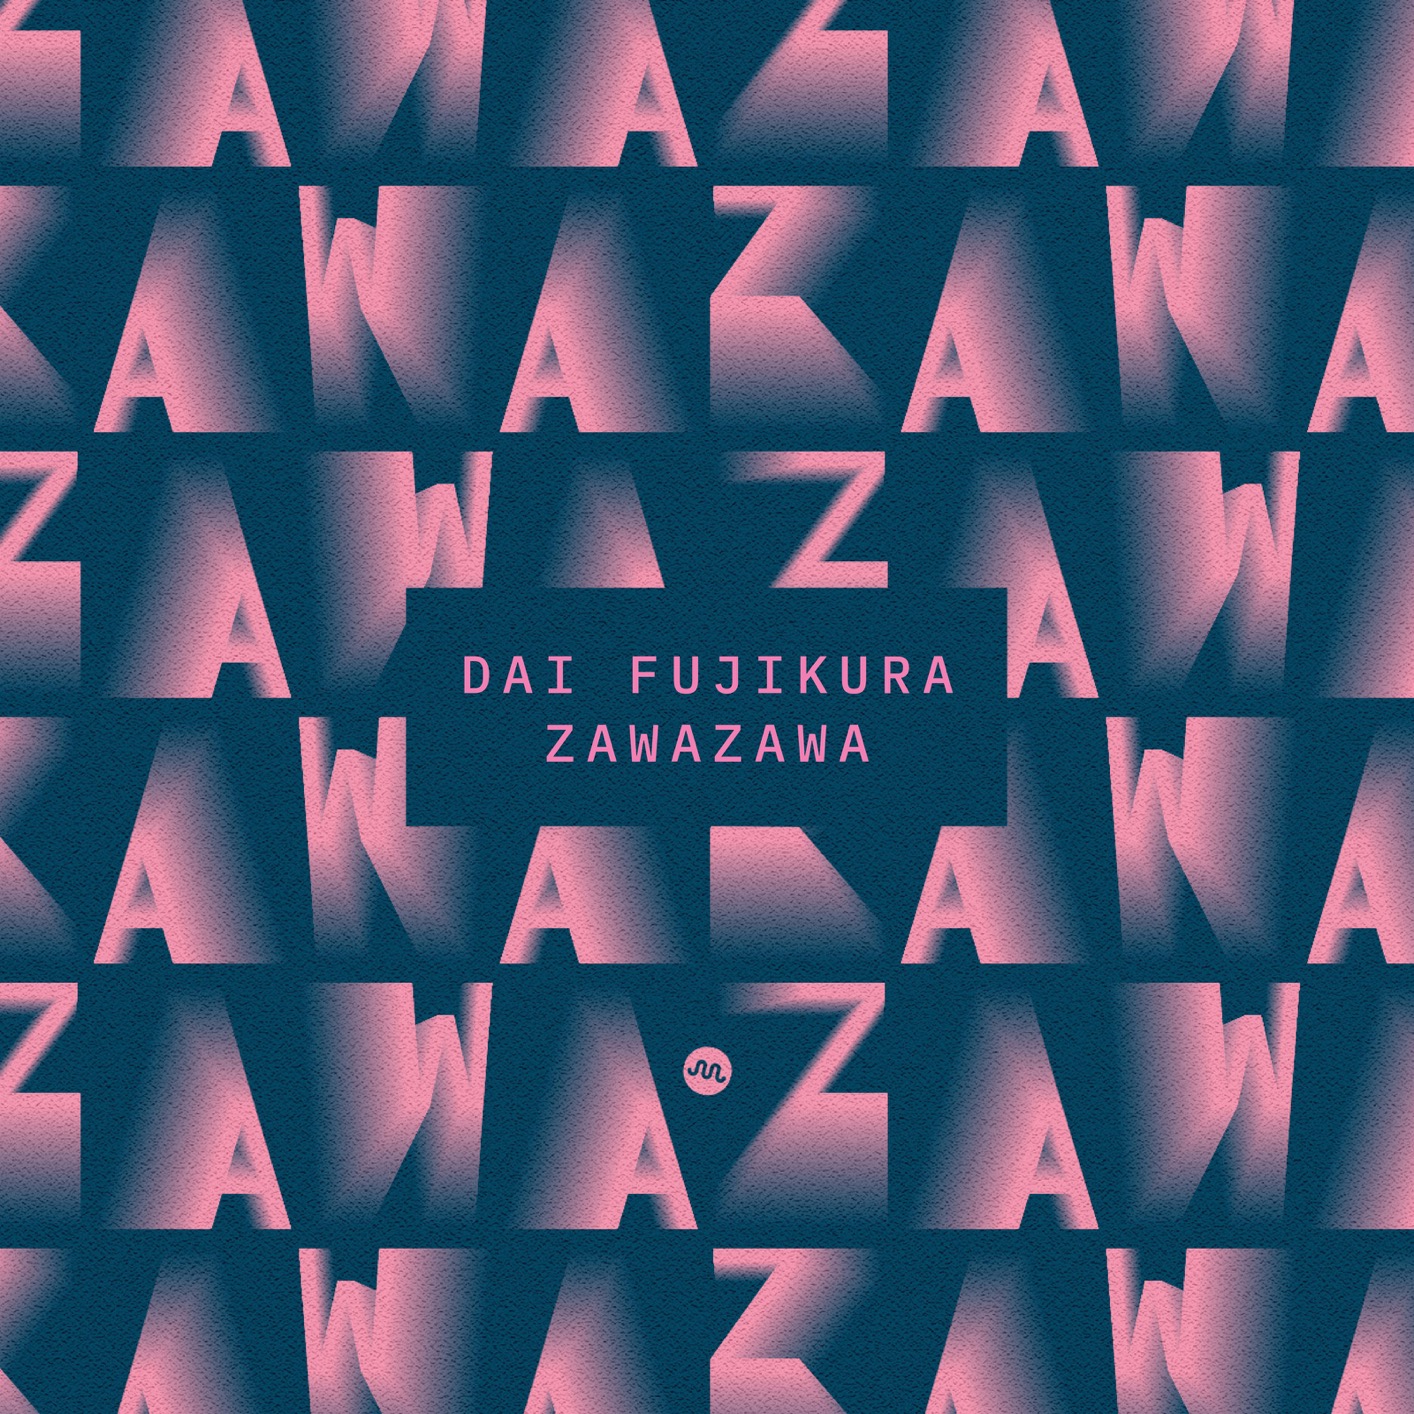 Various Artists & Dai Fujikura – Dai Fujikura: Zawazawa (2019) [FLAC 24bit/96kHz]